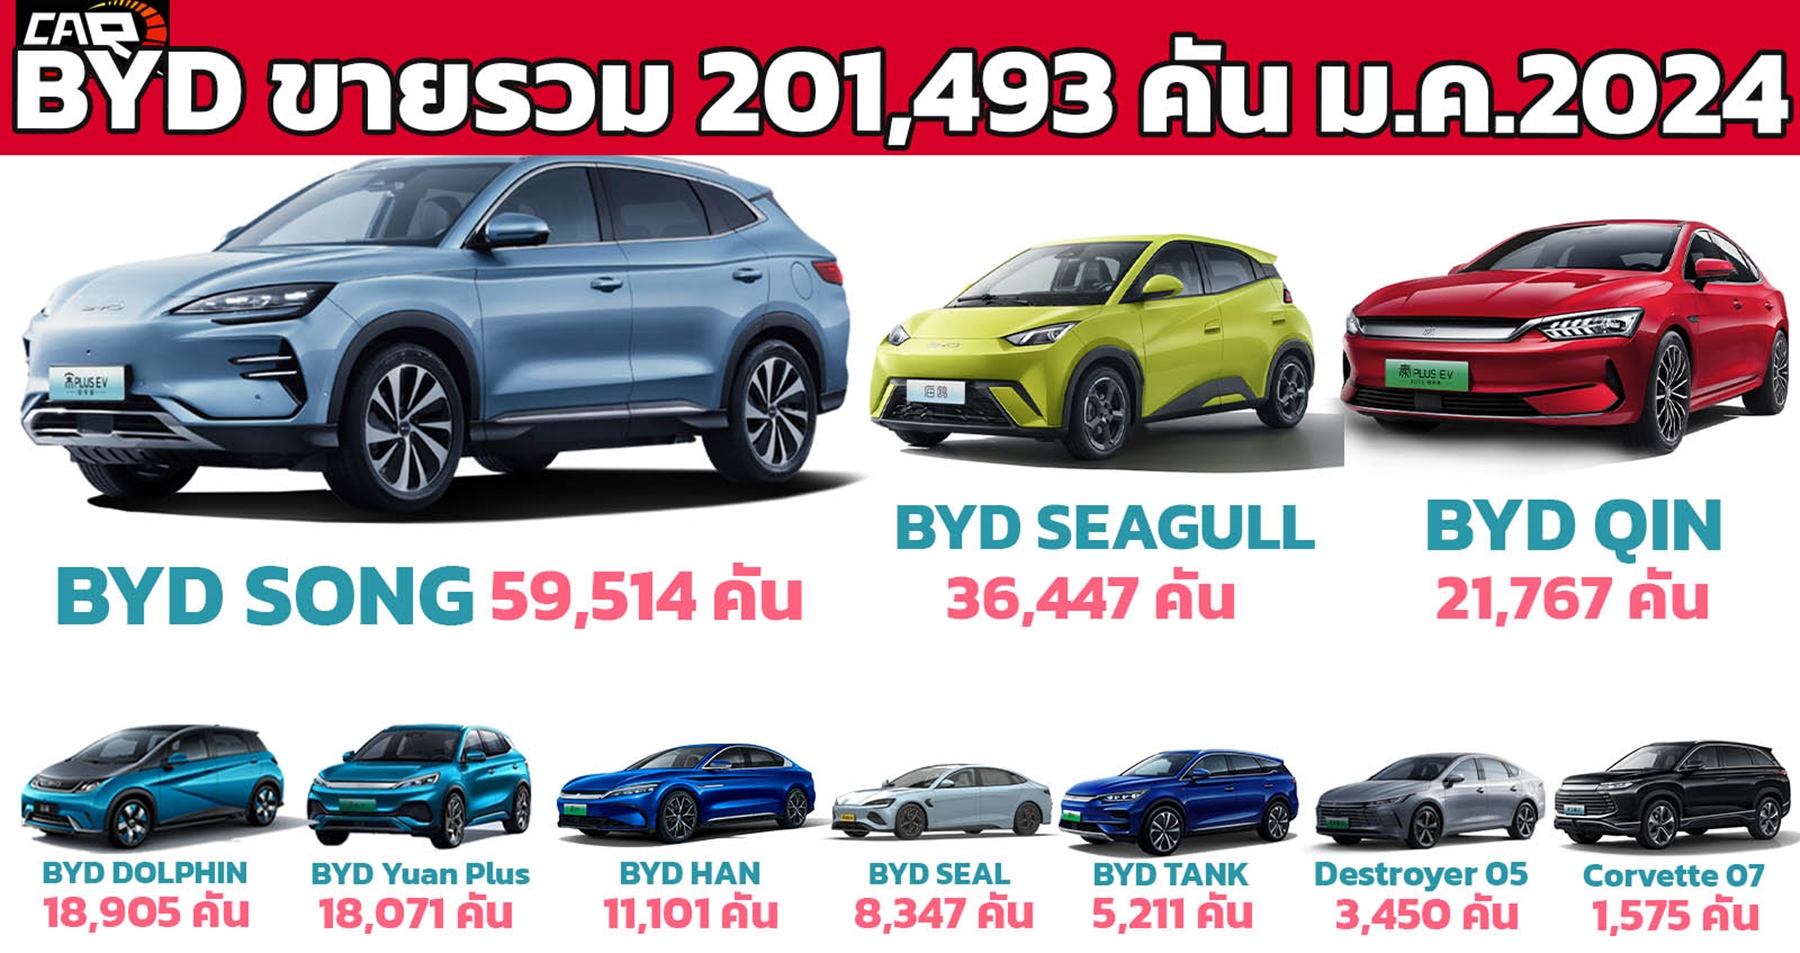 ยอดขายรถยนต์ NEV ของ BYD มกราคม 2024 รวม 201,493 คัน ในประเทศจีน